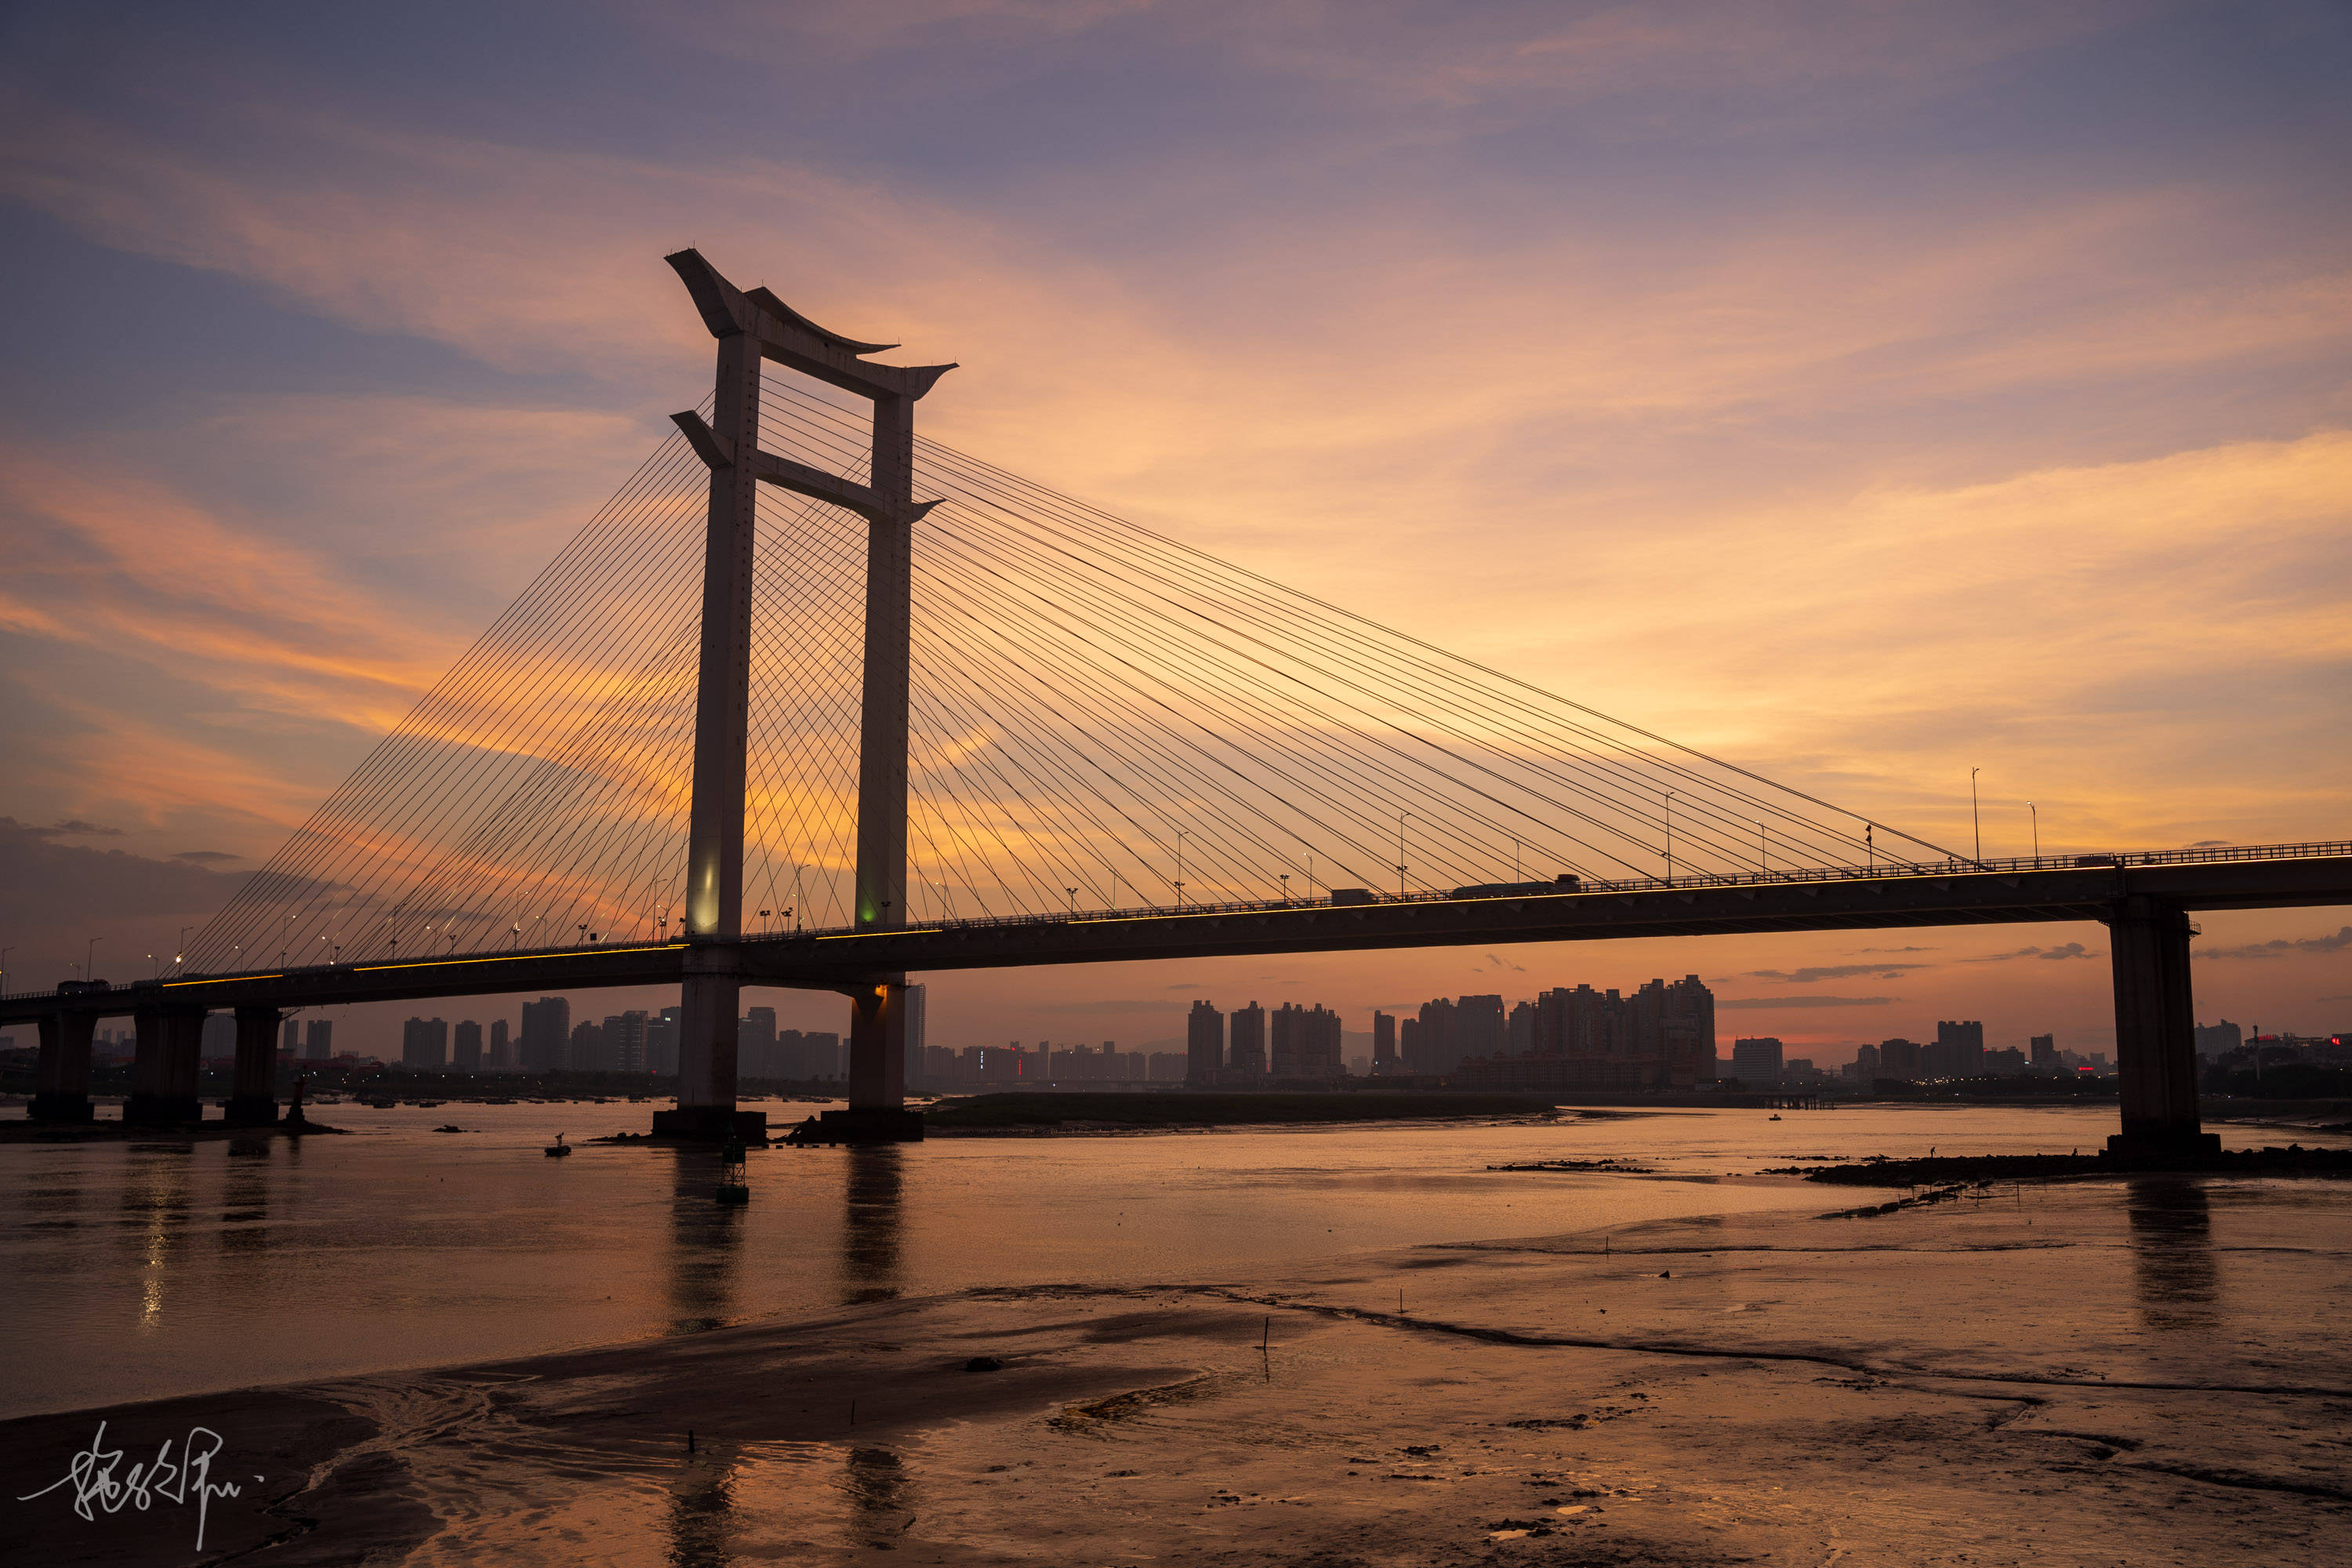 原创晋江大桥连接泉州与晋江石狮的交通要道日落十分美丽